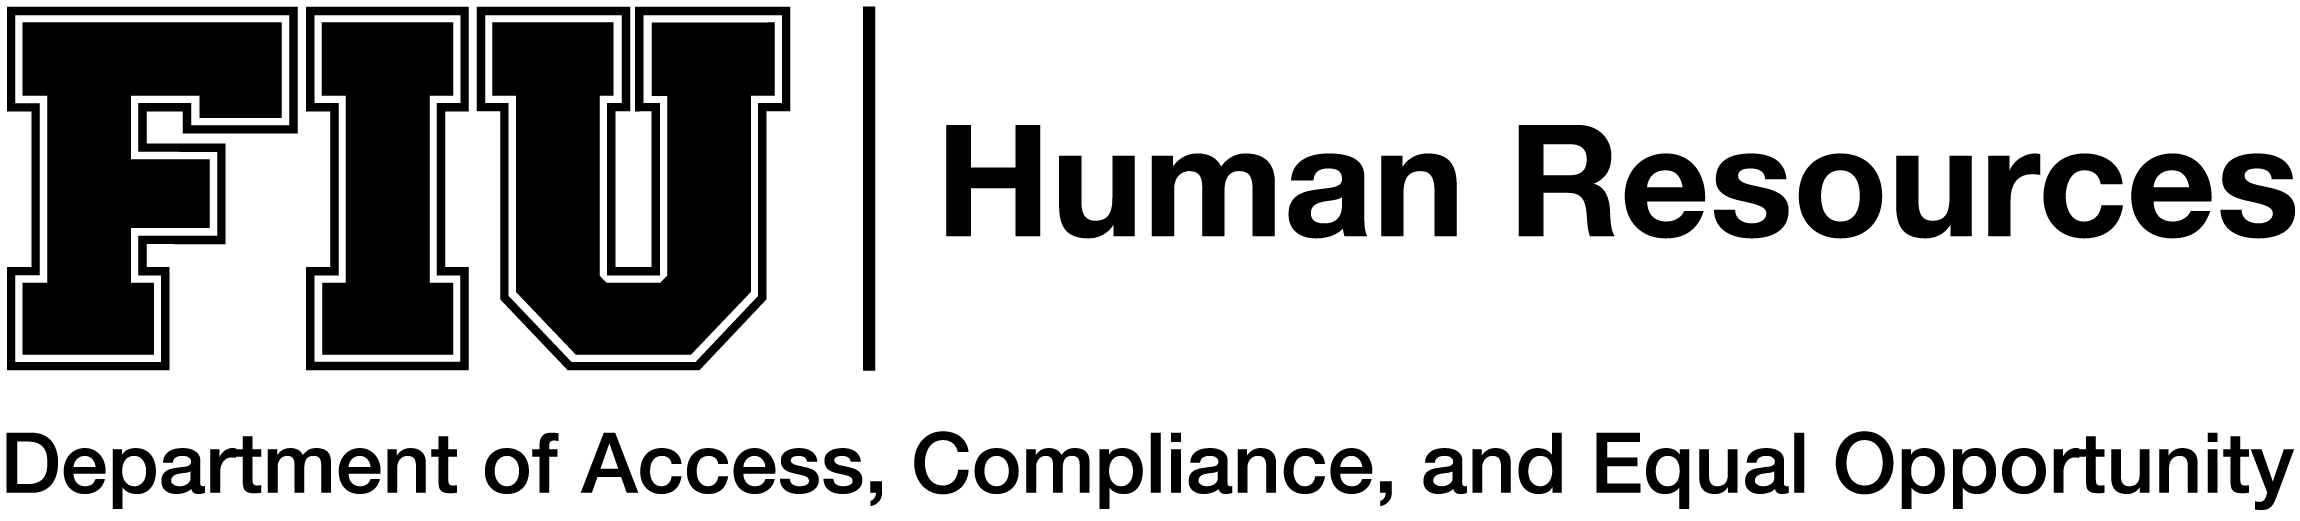 FIU Human Resources logo